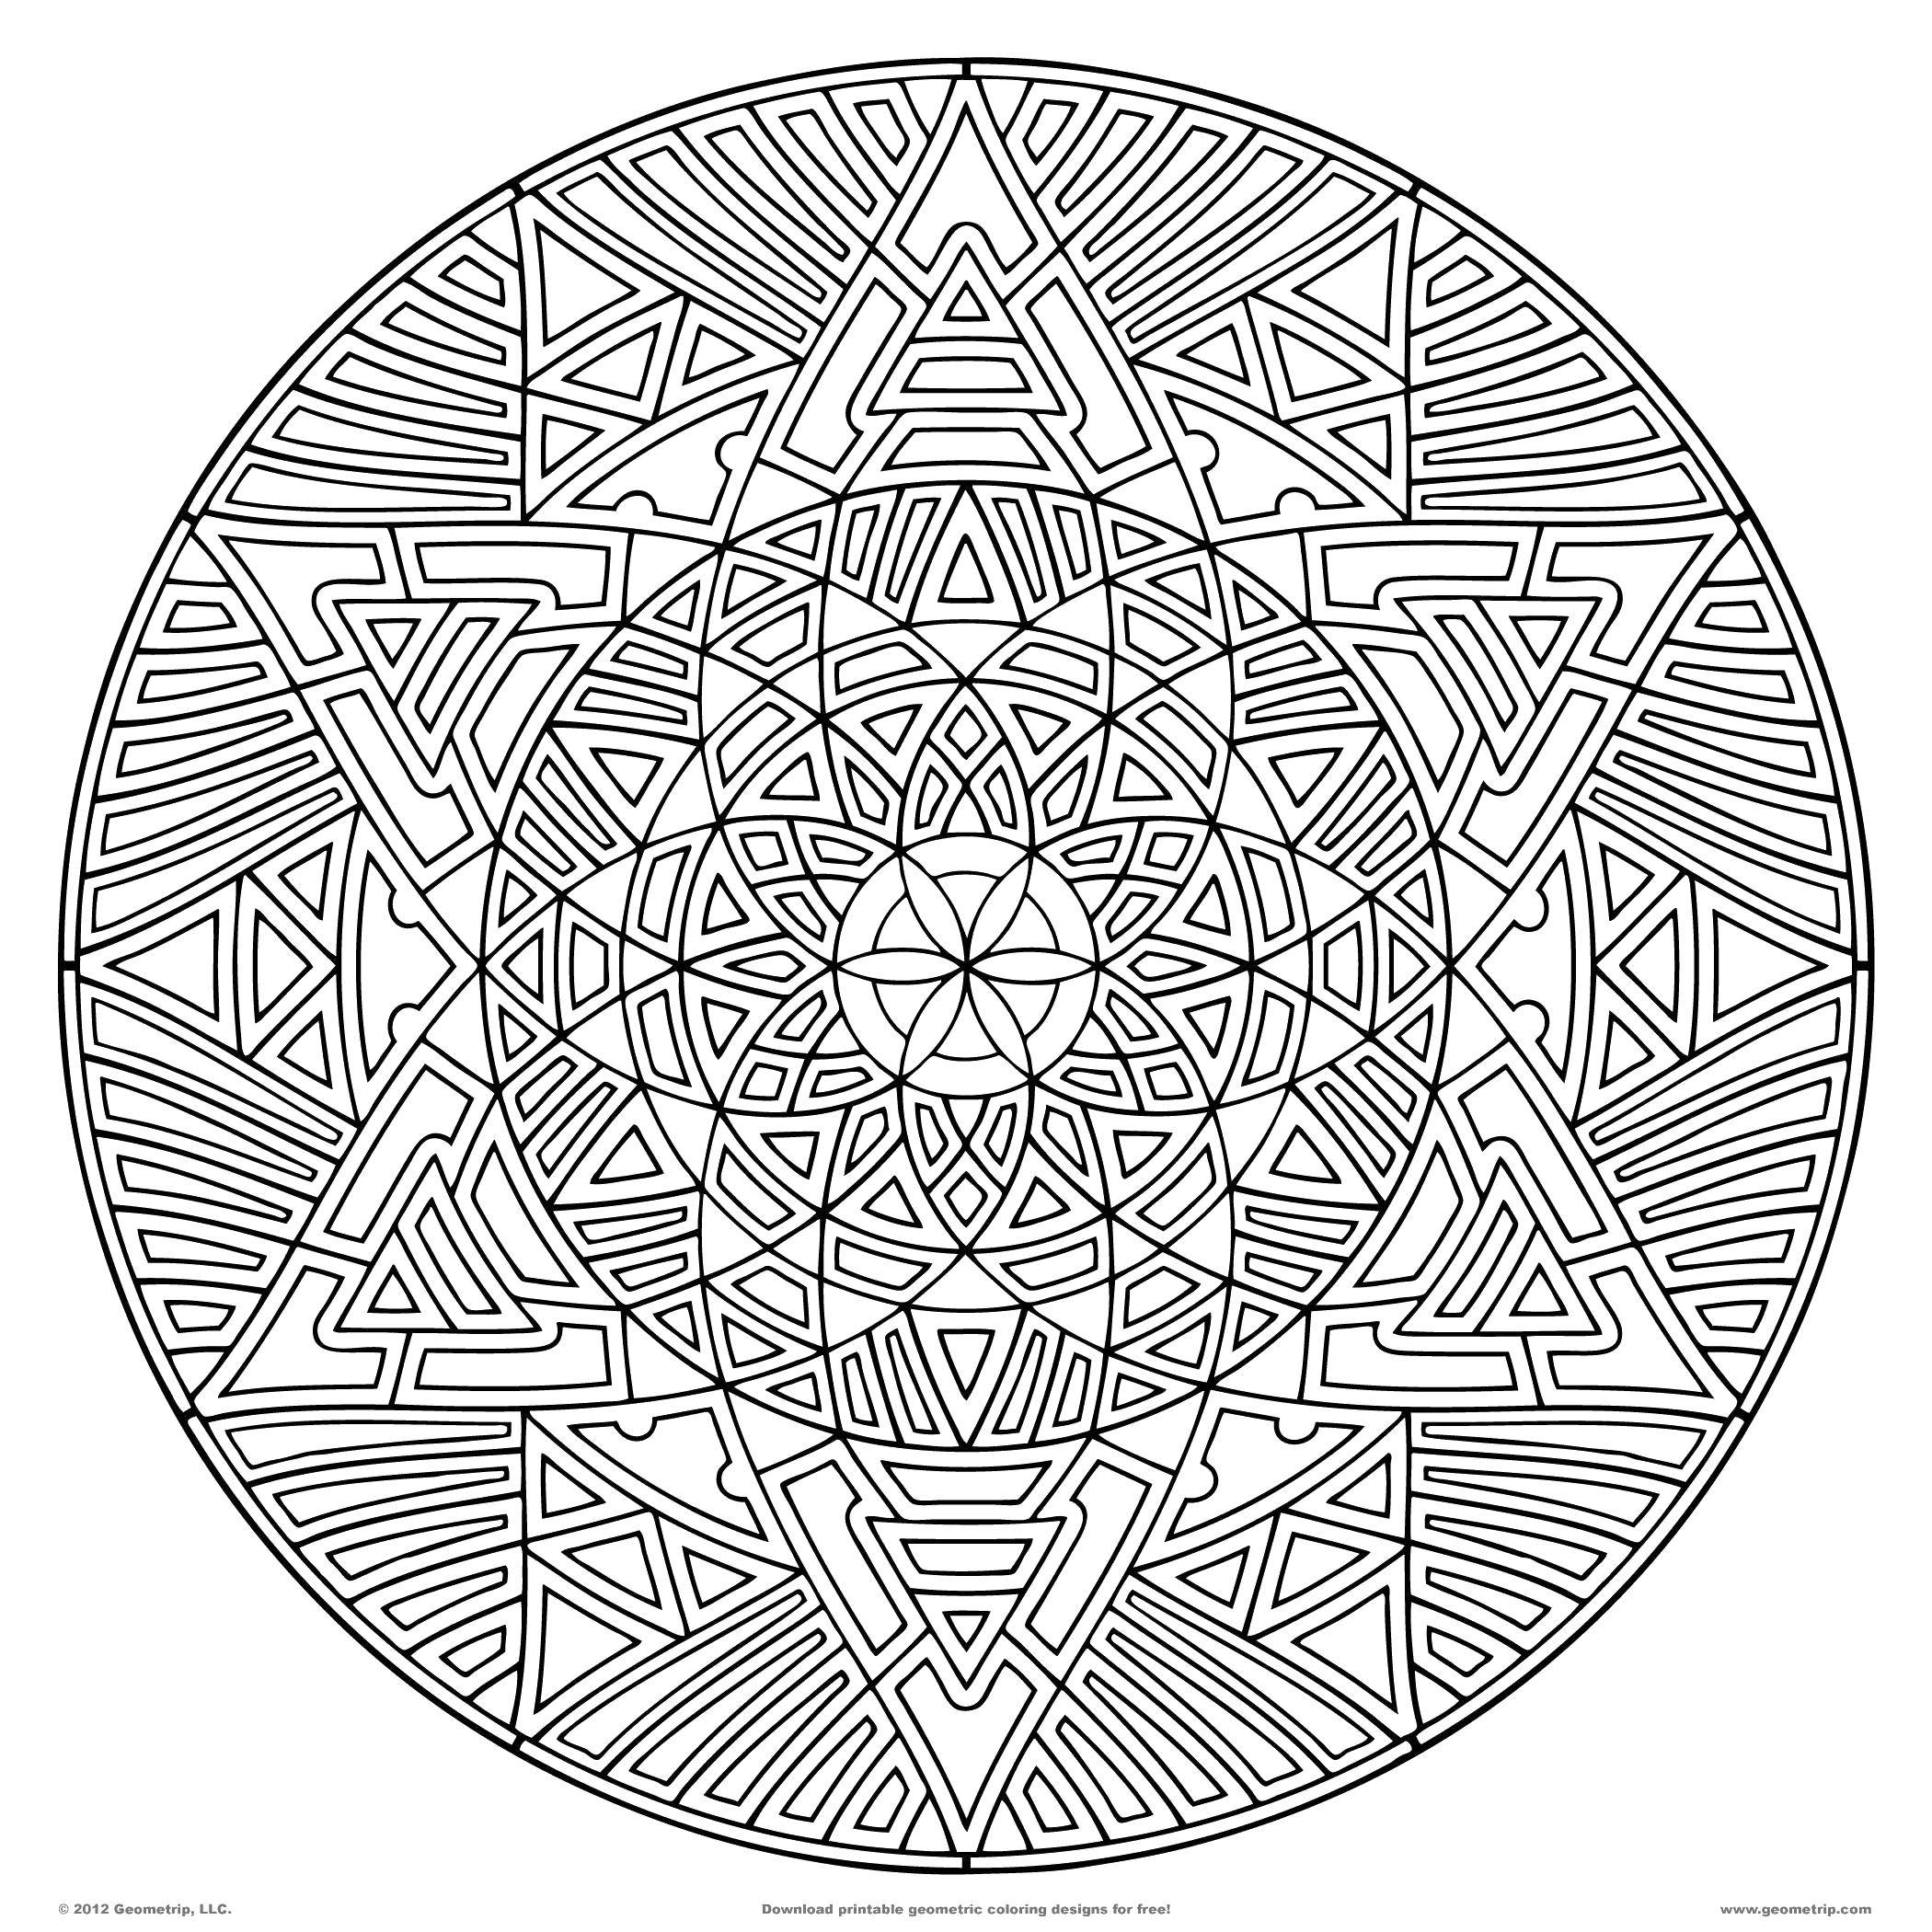 Название: Раскраска Мелкие узоры в кругу. Категория: С узорами. Теги: Узоры, геометрические.